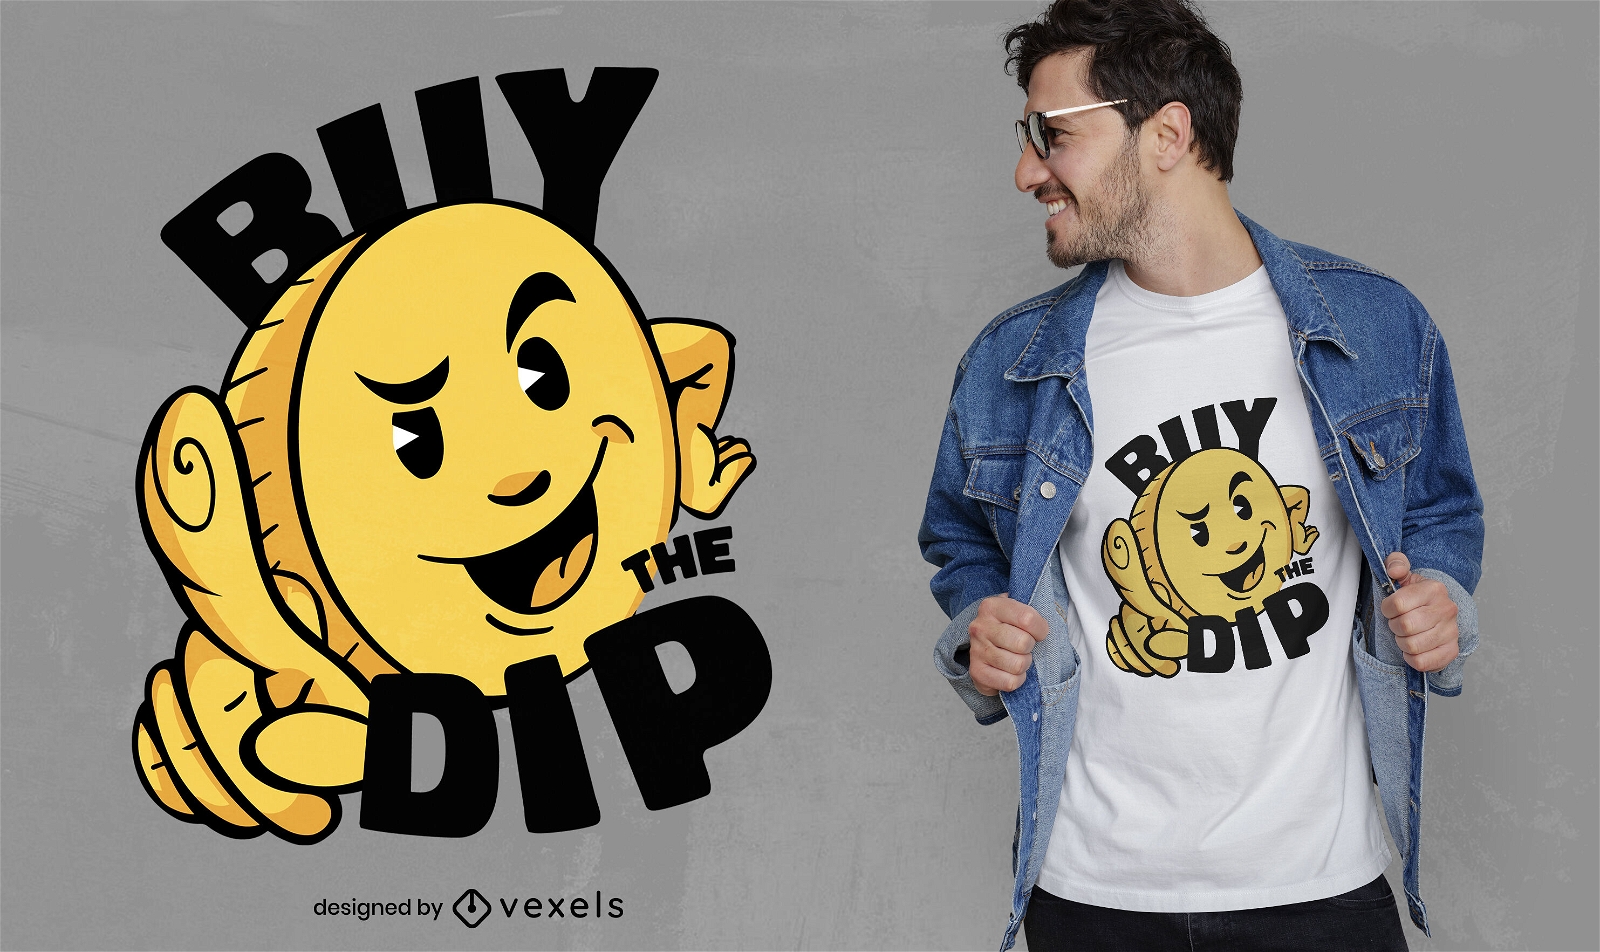 Kaufen Sie das Dip-Kryptowährungs-T-Shirt-Design